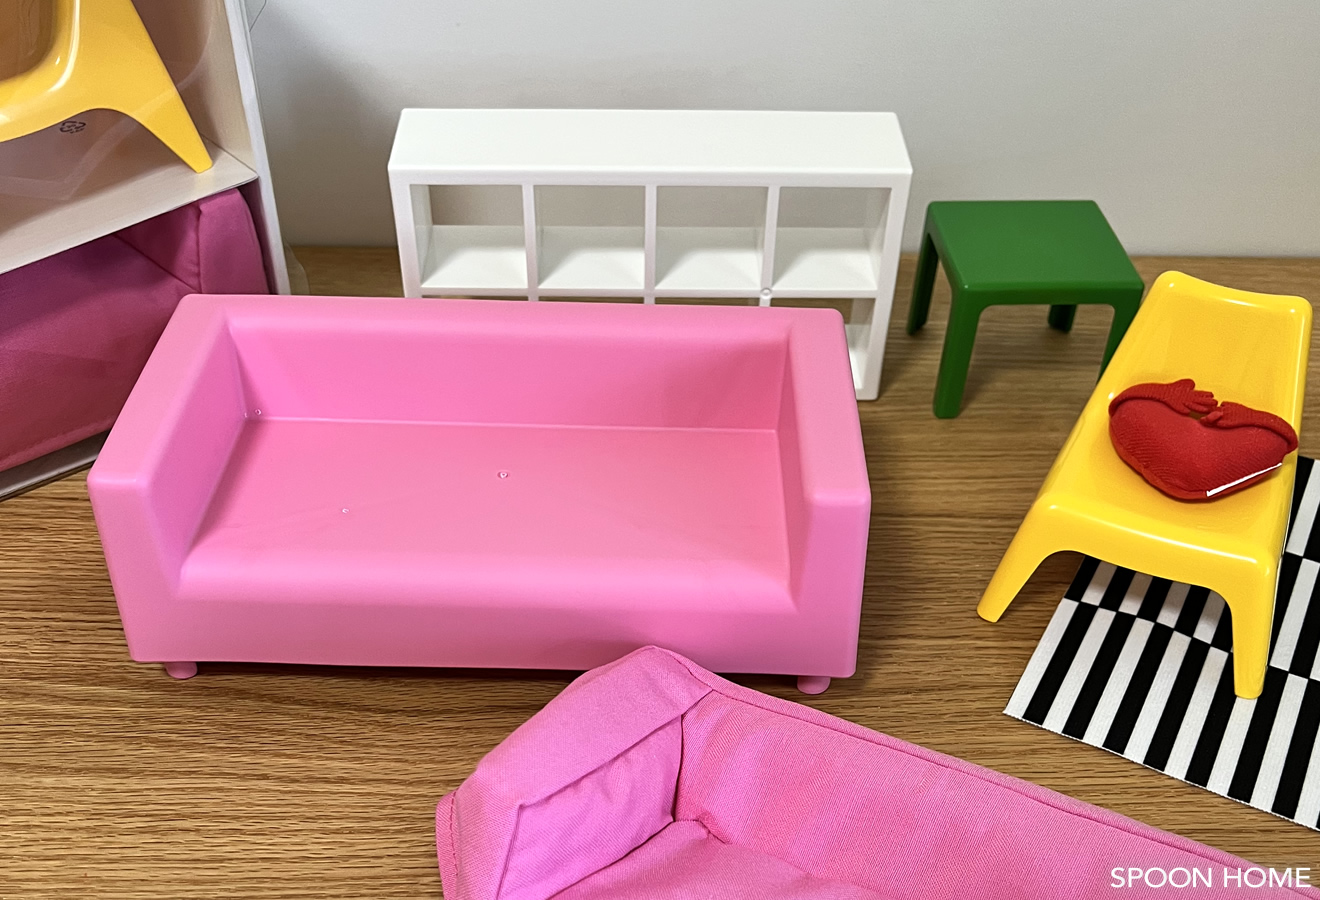 IKEAのミニチュア家具「HUSET・フーセット」。サイズ感と使用例をご紹介